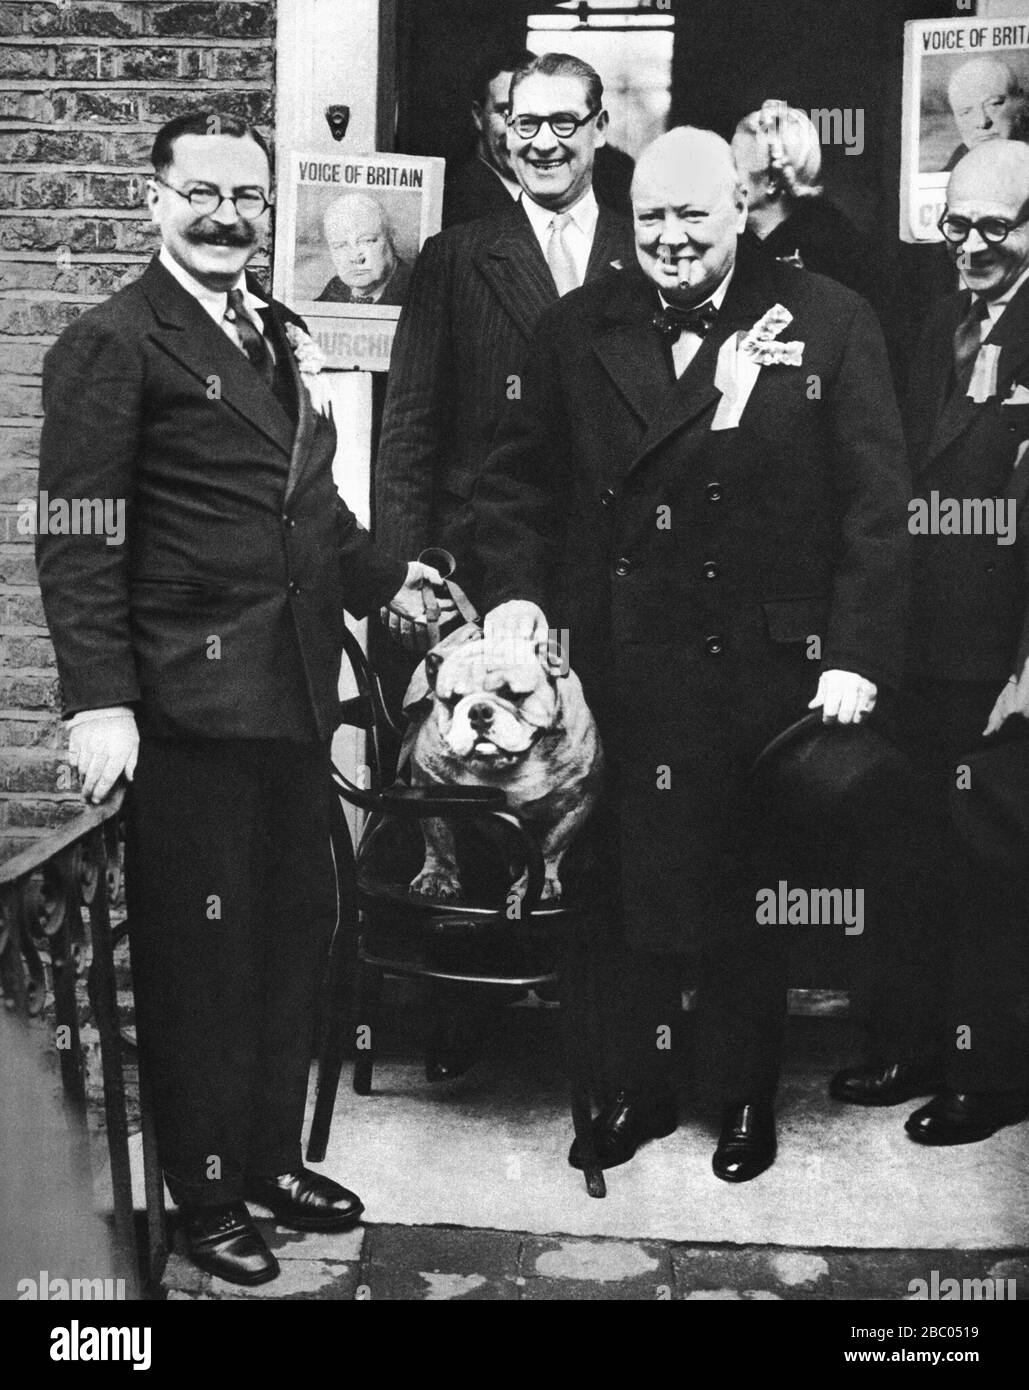 Winston Churchill à l'extérieur du club conservateur de Wanstead, Grand Londres.23 février 1950. Banque D'Images